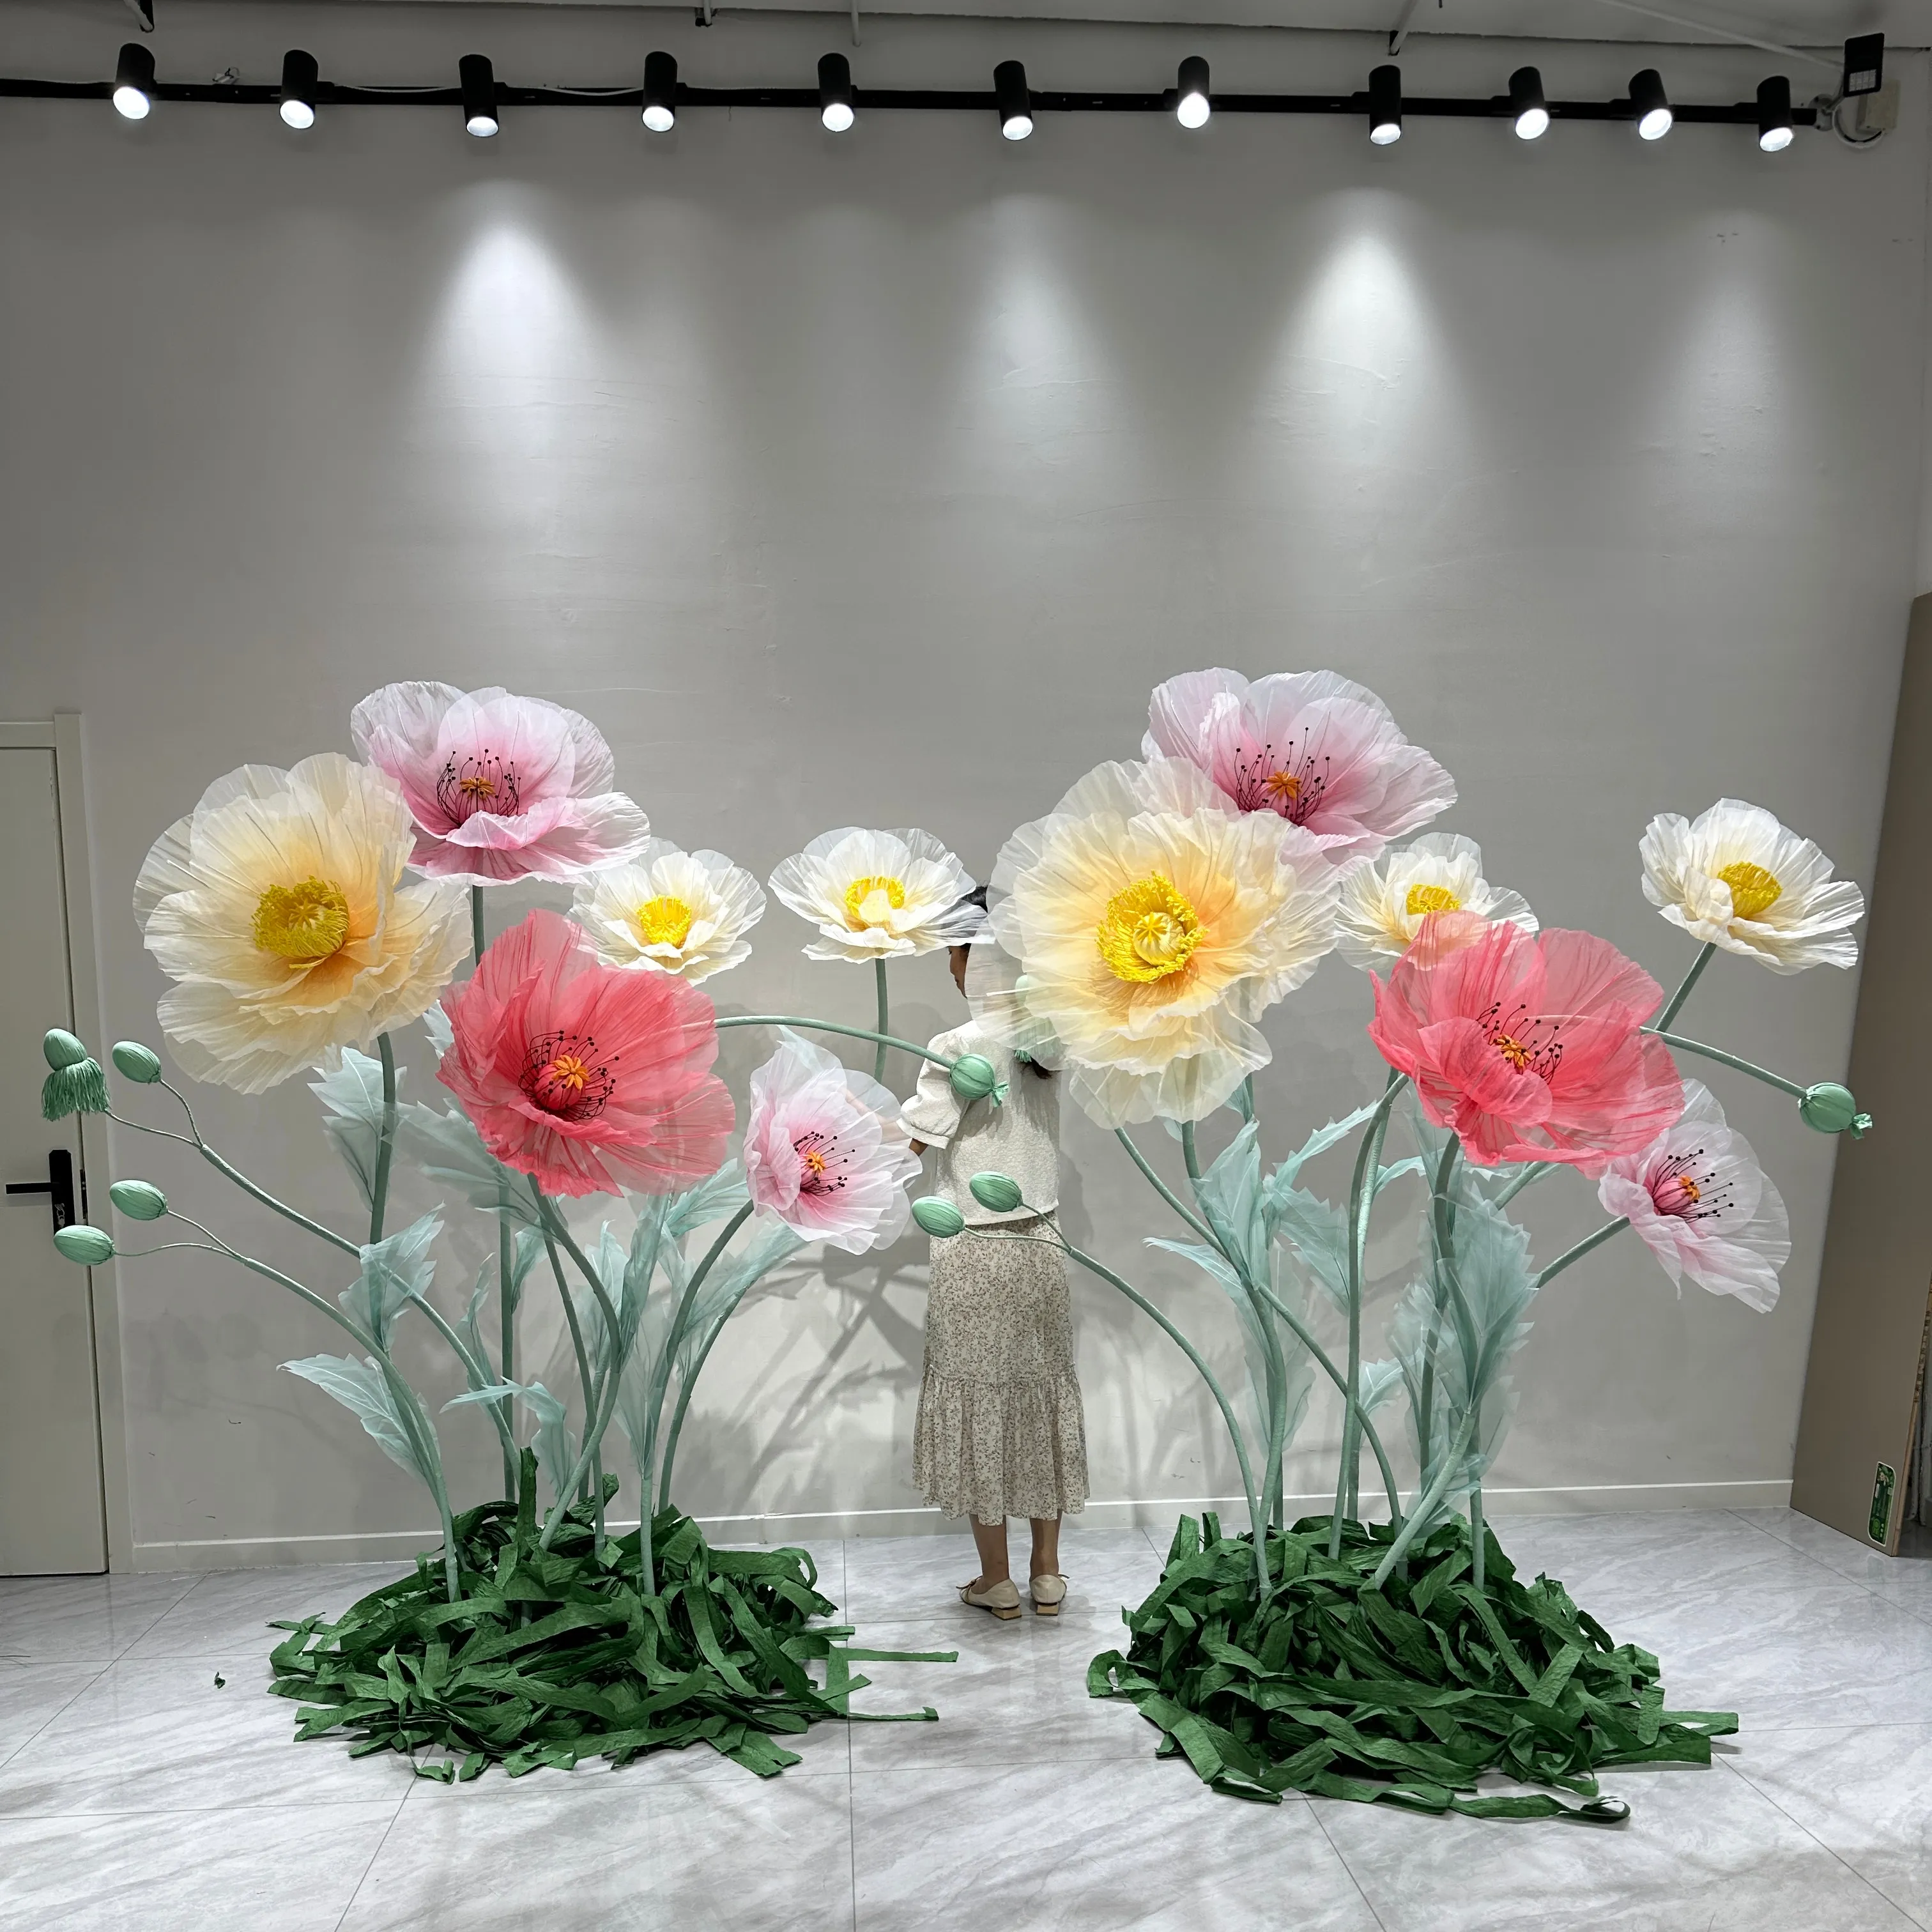 H-030 neue Design Riesen Seide Organza Mohn Blume Set mit Samen für Hochzeit Event Party Fenster visuelle Mer chand ising Dekoration